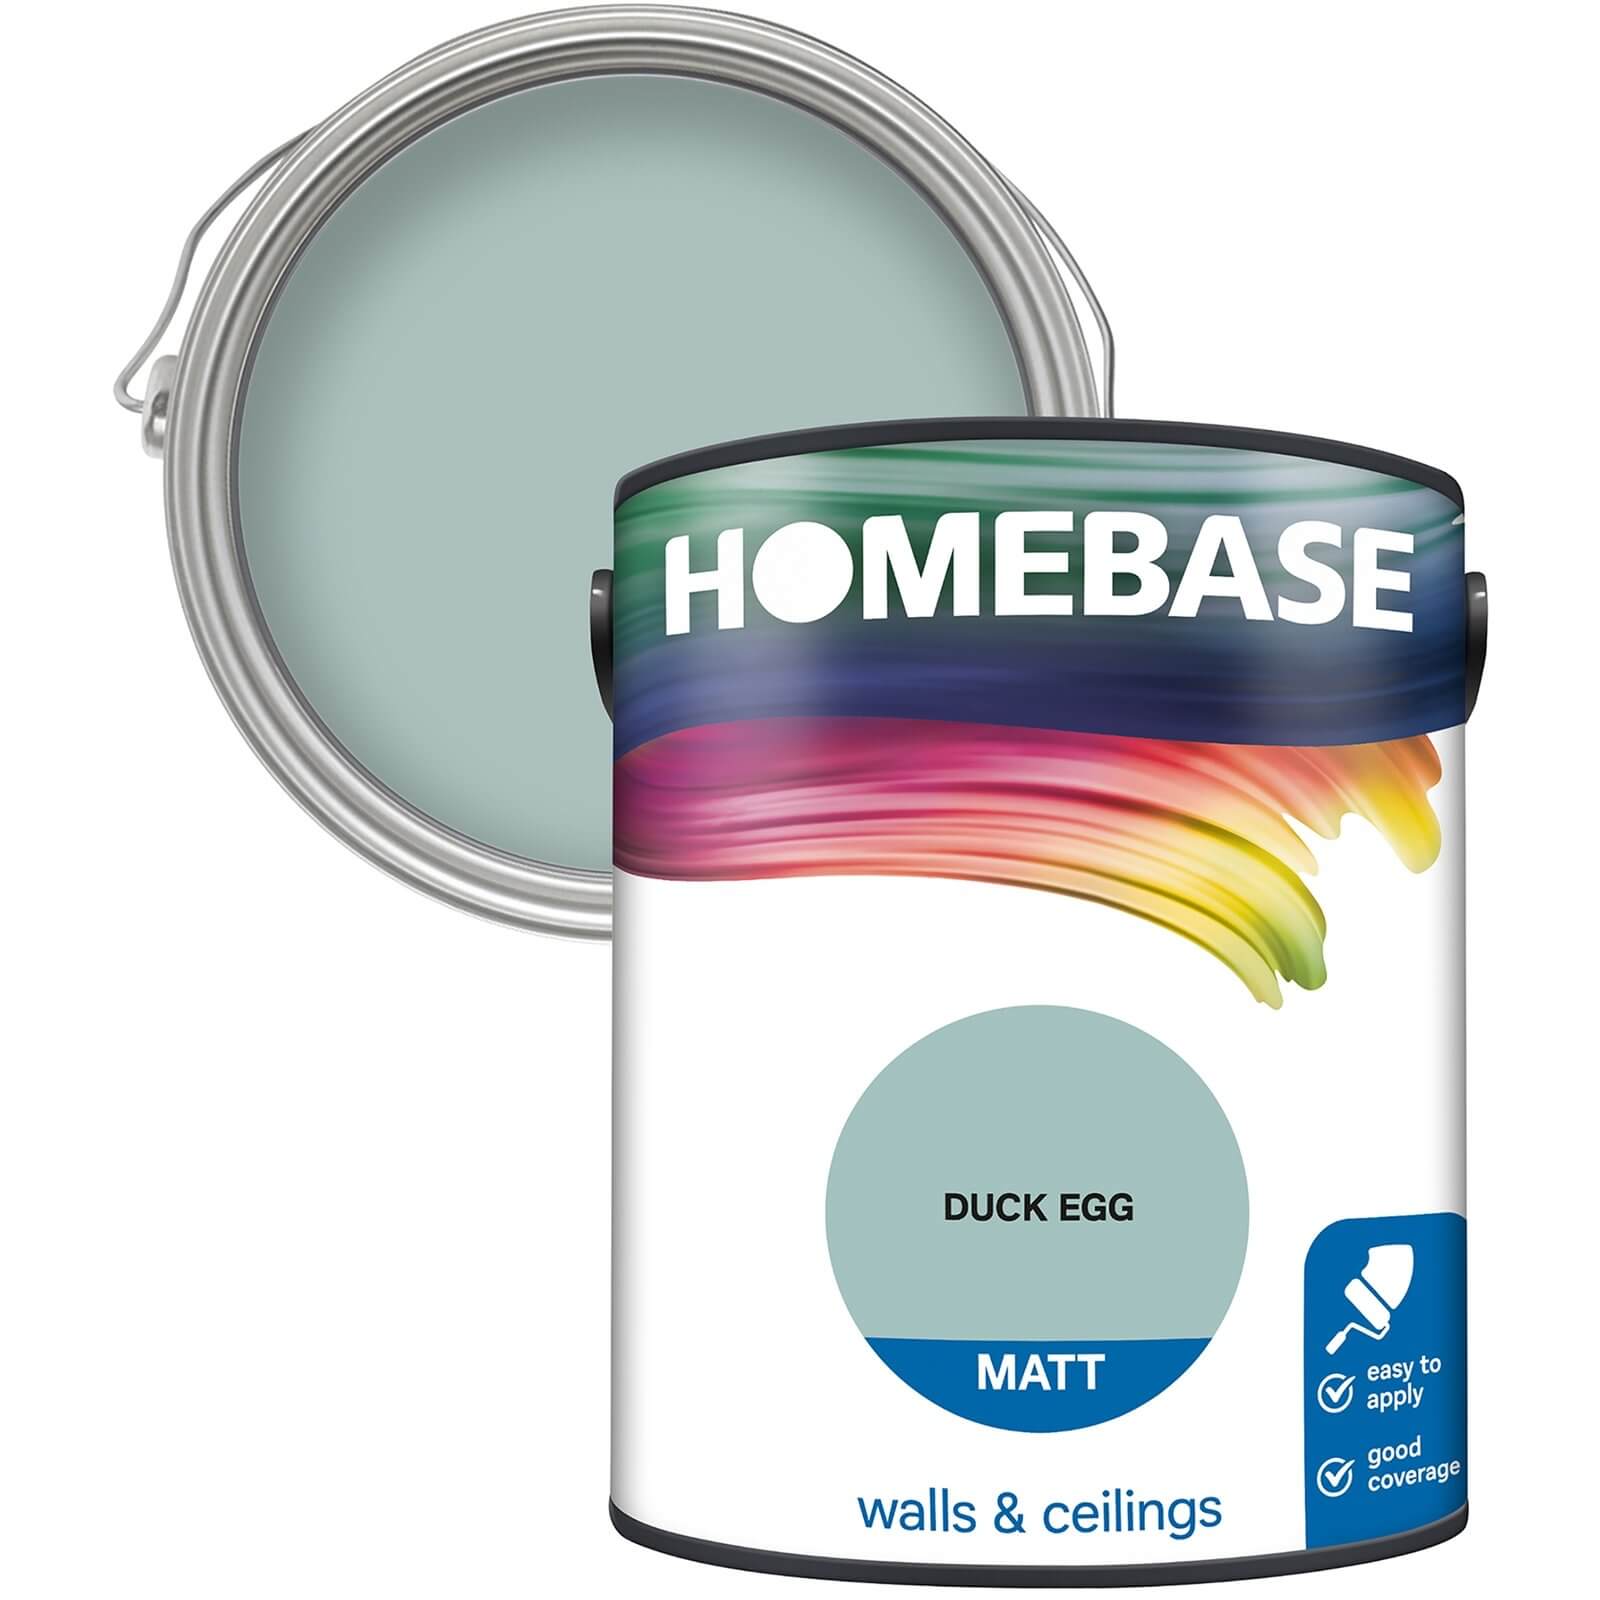 Homebase Matt Emulsion Paint Duck Egg - 5L